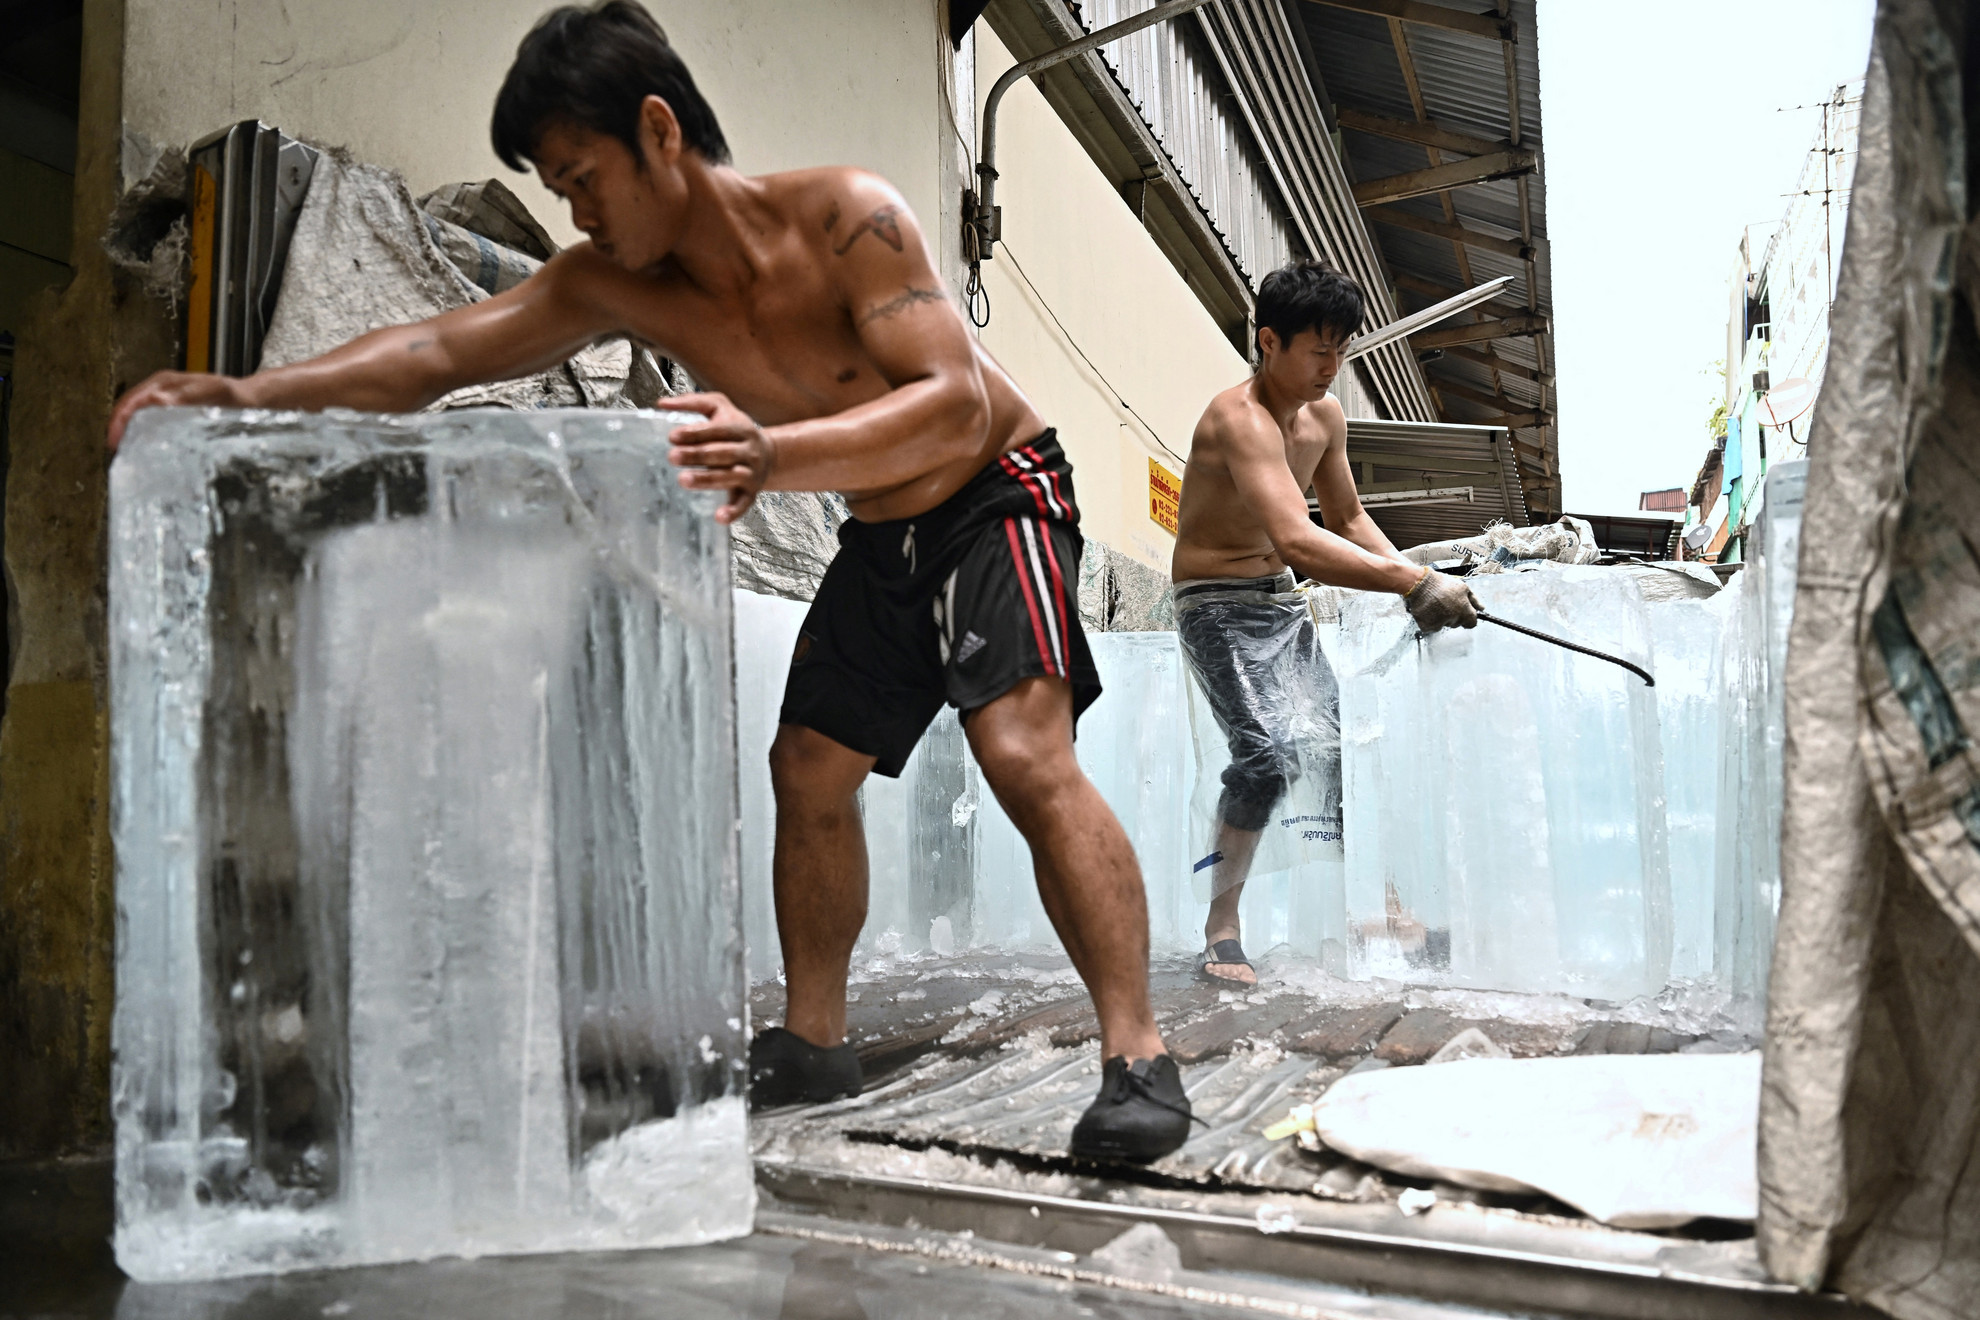 Jégtömböket szállítanak egy tárolóegységbe egy piacon a hőhullám idején Bangkokban, 2023. április 25-én. A tudósok szerint a globális felmelegedés súlyosbítja a kedvezőtlen időjárási viszonyokat. Az elmúlt hetekben számos országban halálos kánikulát és rekordokat döntögető hőmérsékletet tapasztaltak Délkelet- és Dél-Ázsiában. Májusban az ENSZ arra figyelmeztetett, hogy 2023-2027 között szinte biztos, hogy a valaha feljegyzett legmelegebb ötéves időszaka következik, mivel az üvegházhatású gázok és az El Nino együttesen a hőmérsékletet a magasba repítik.